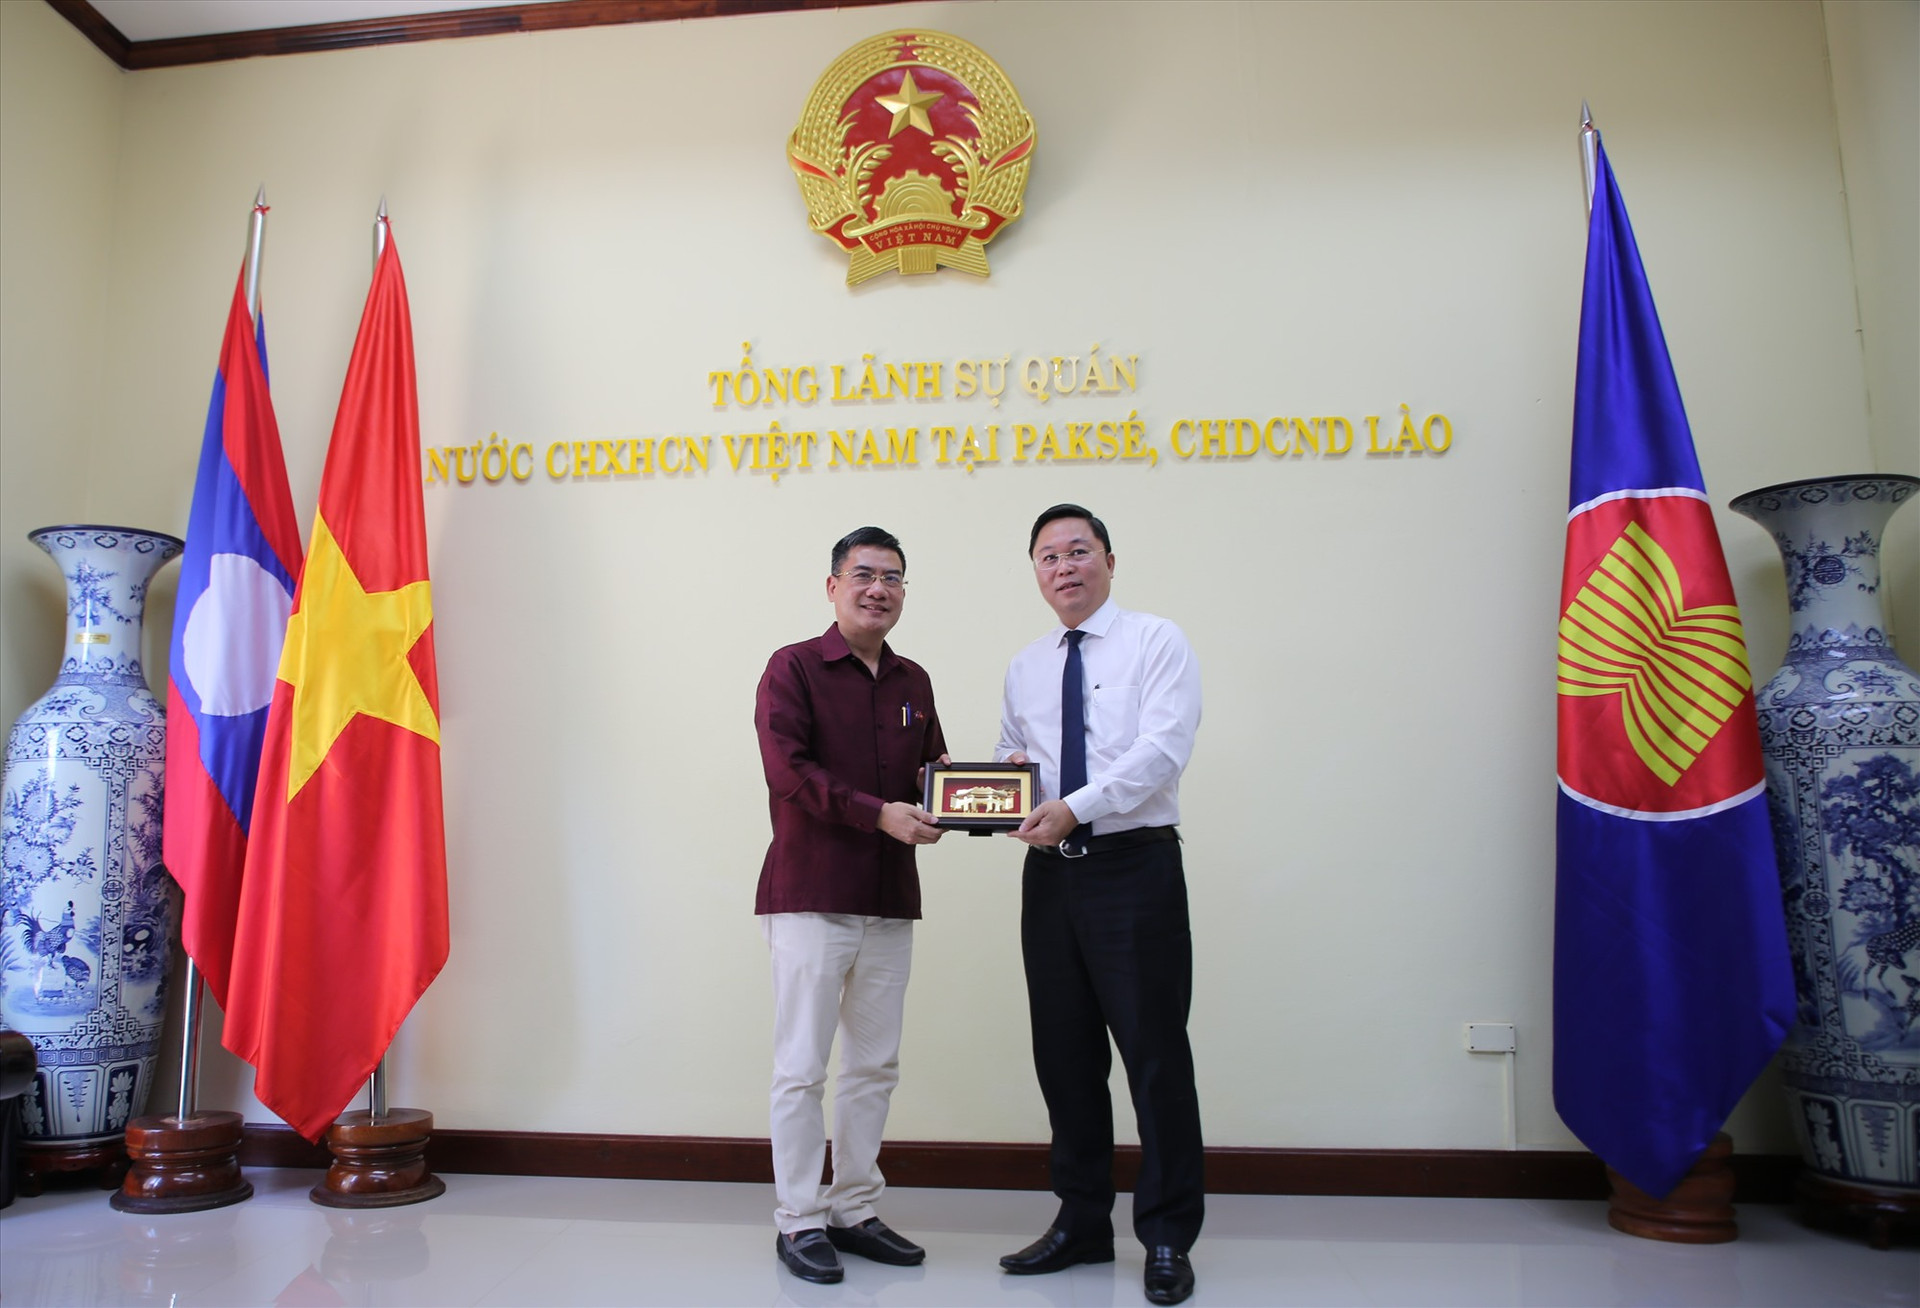 Đồng chí Lê Trí Thanh trao món quà cho đại diện Tổng Lãnh sự quán Việt Nam tại Păk Sế. Ảnh: A.N